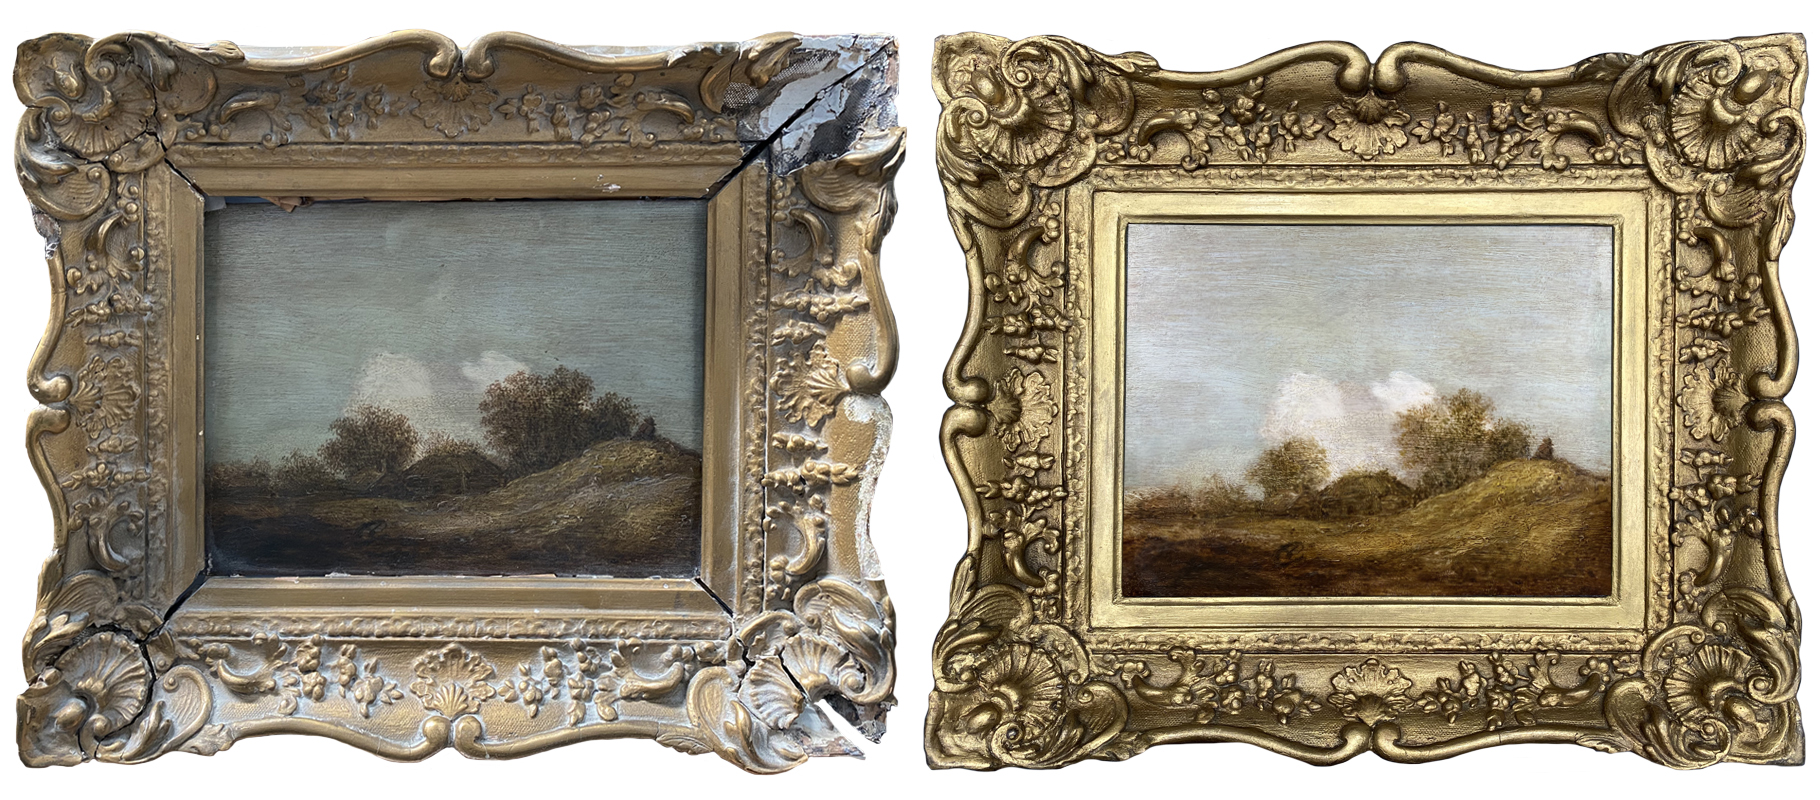 Dutch landscape painting restoration